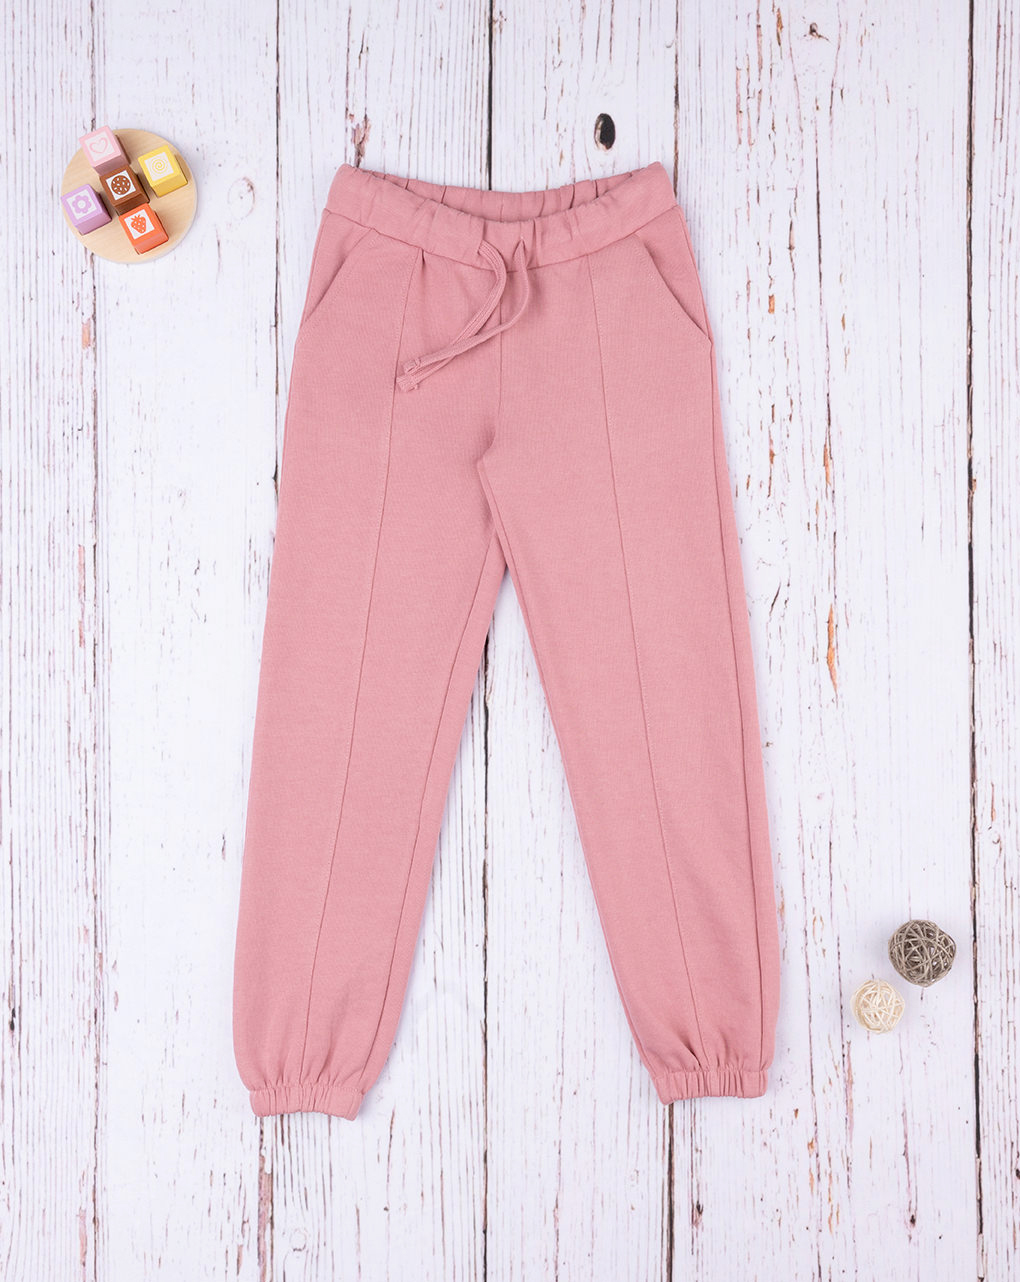 Pantalone bimba rosa